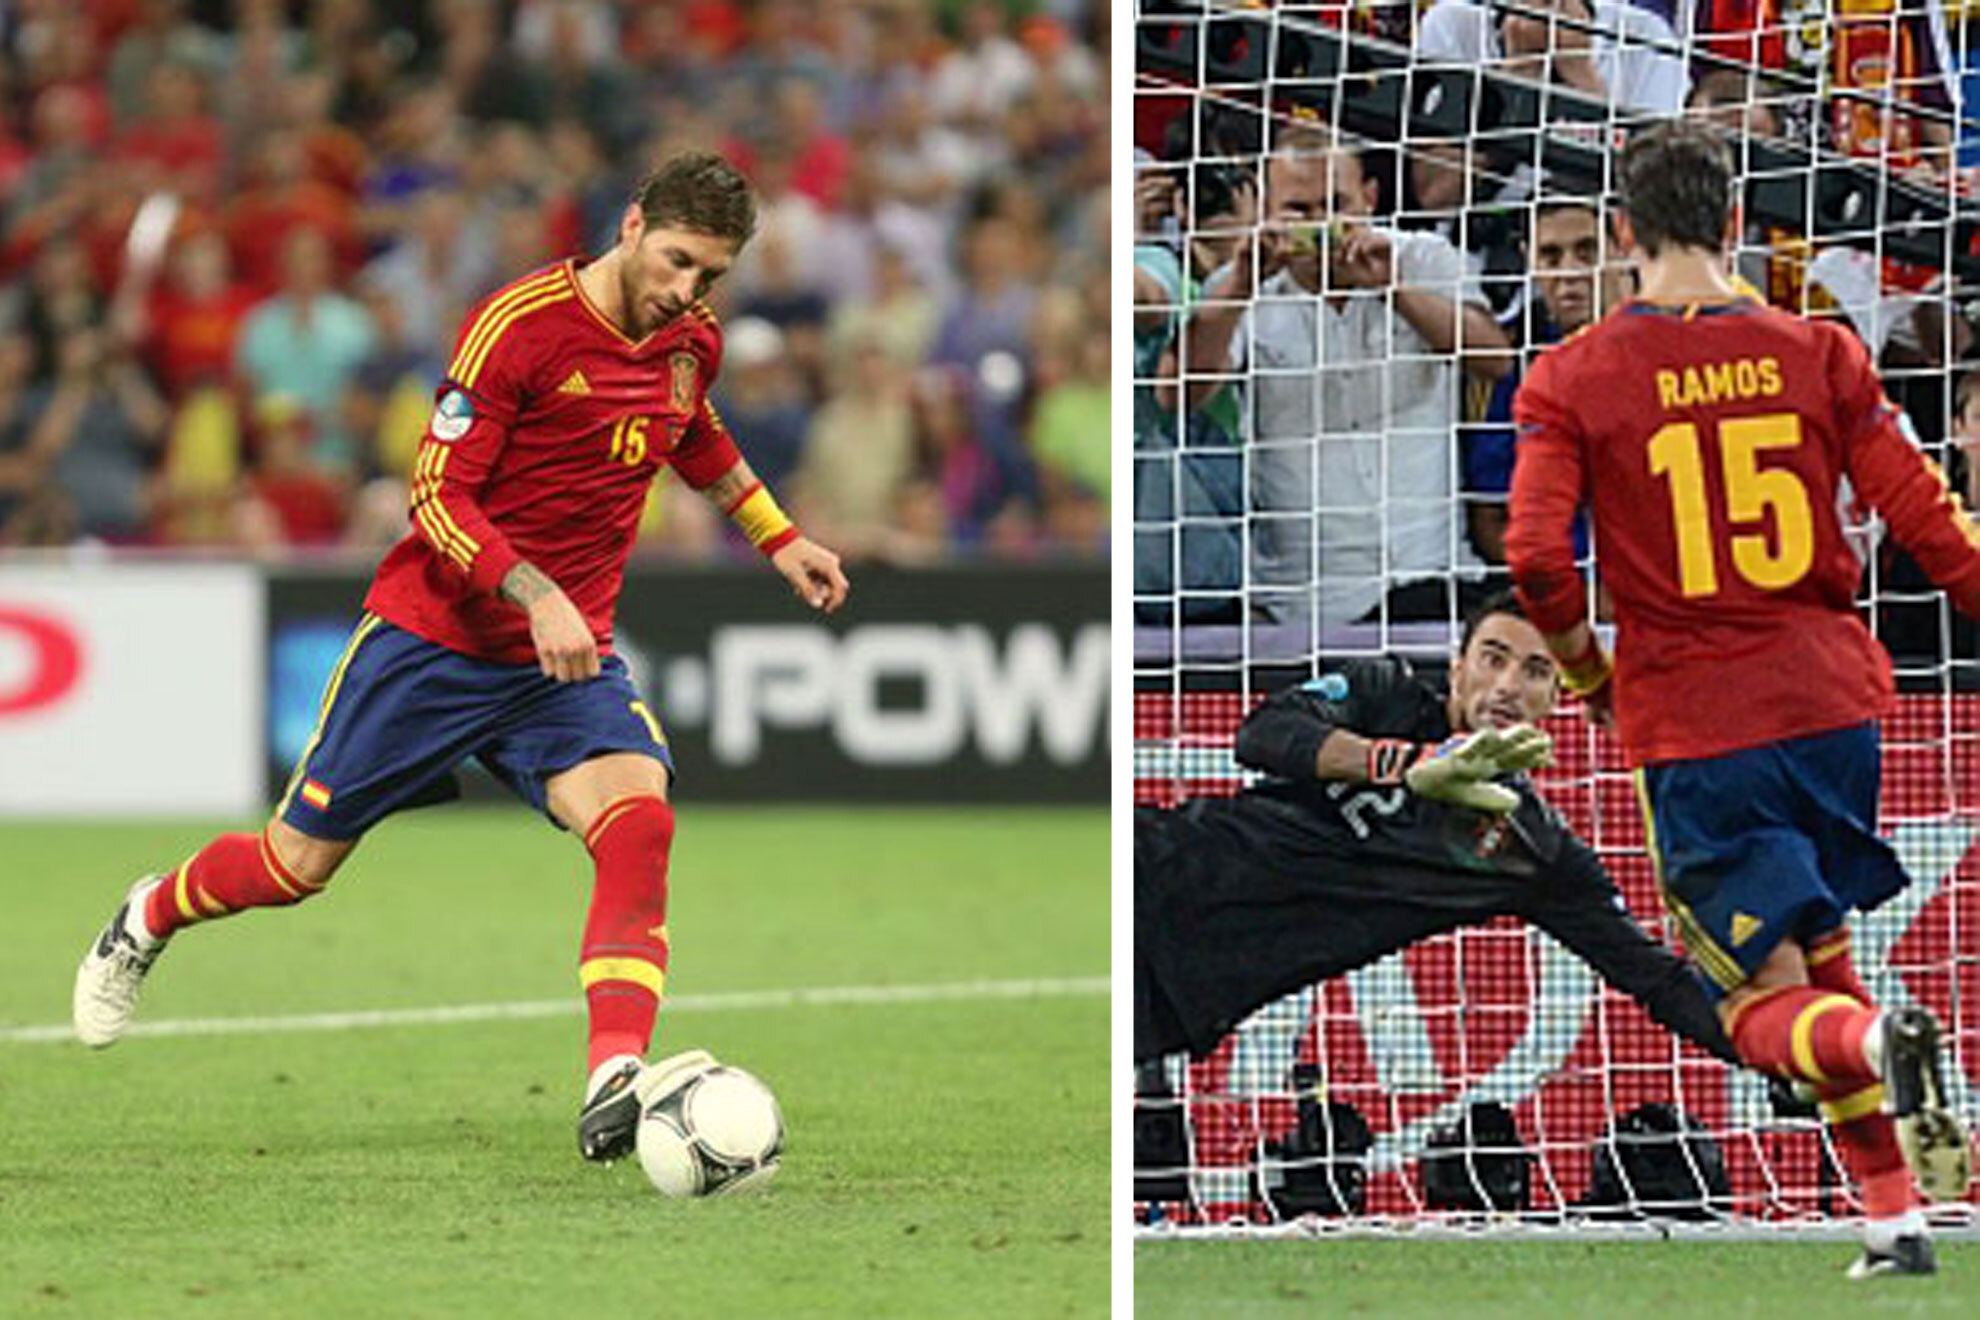 Historia de Espaa: el 'panenka' de Ramos en la tanda ante Portugal en la Euro 2012